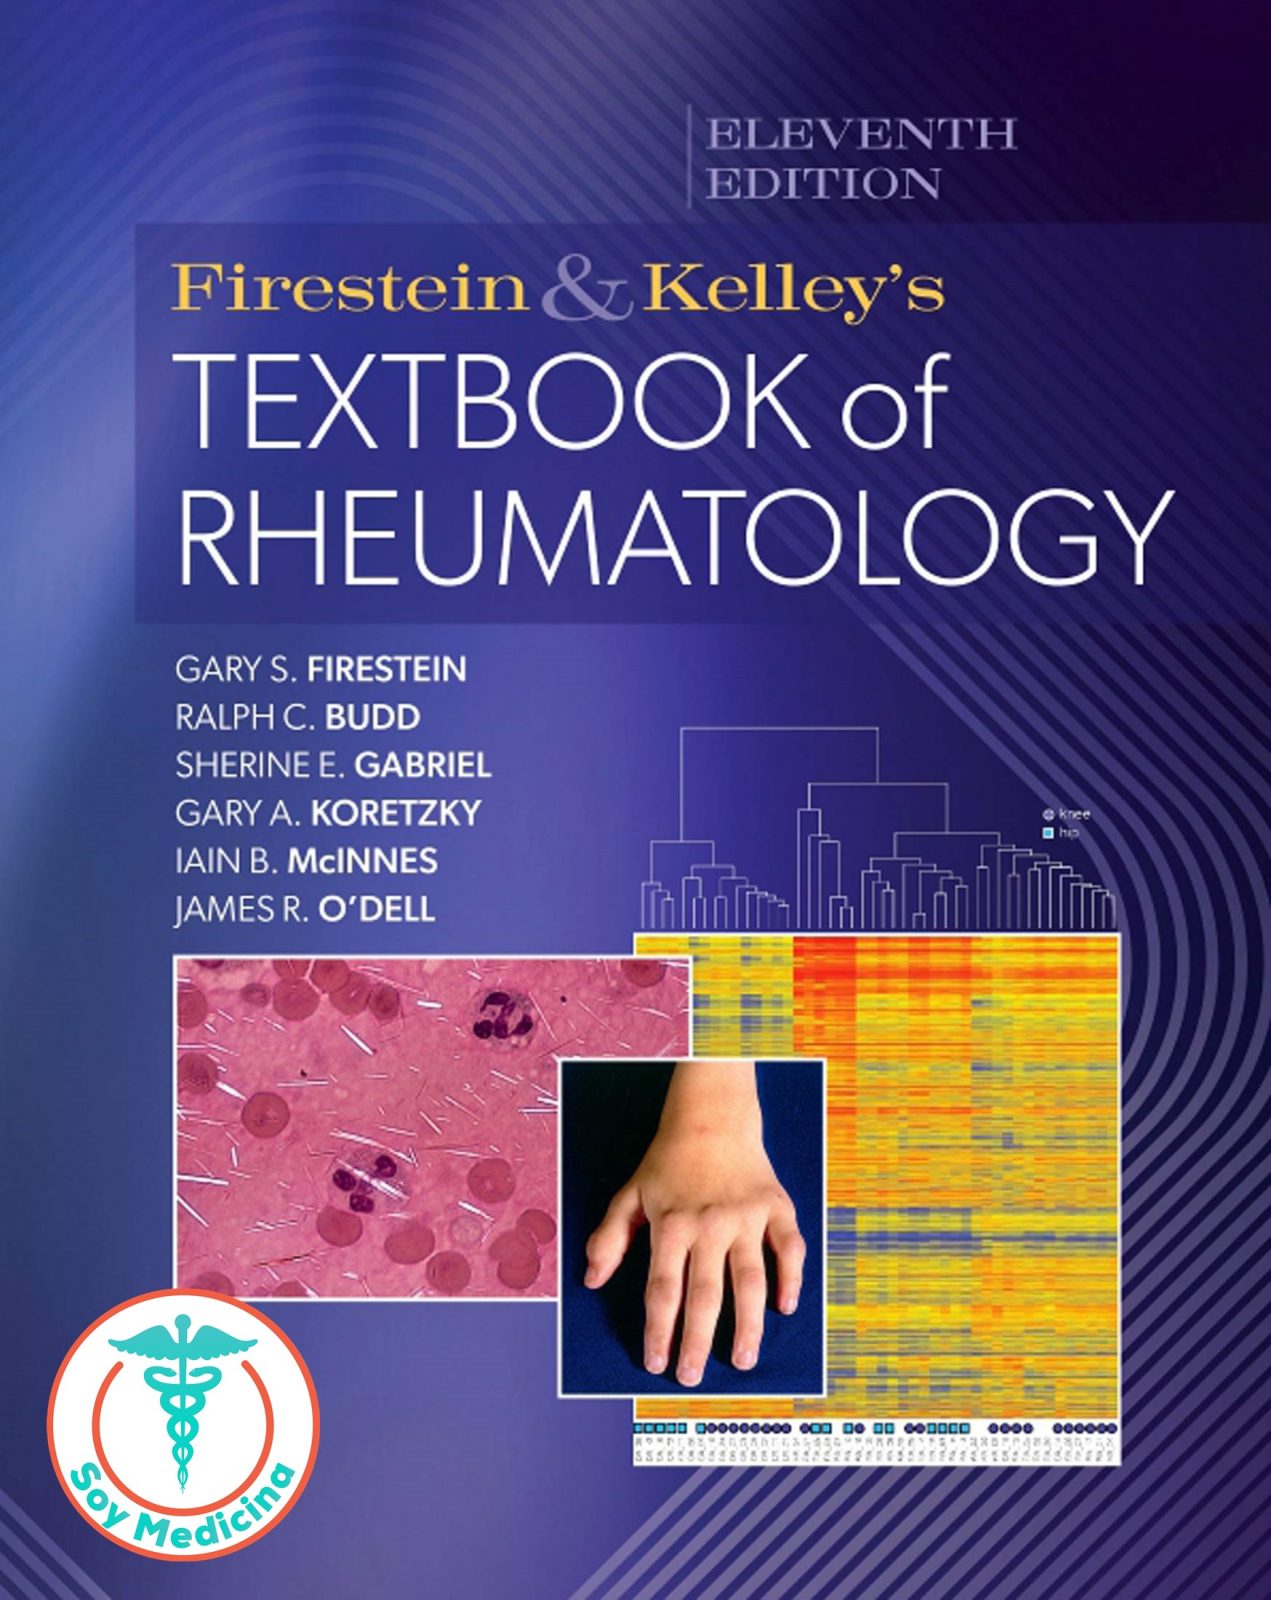 Firestein & Kelleys Textbook of Rheumatology - 11th Edition